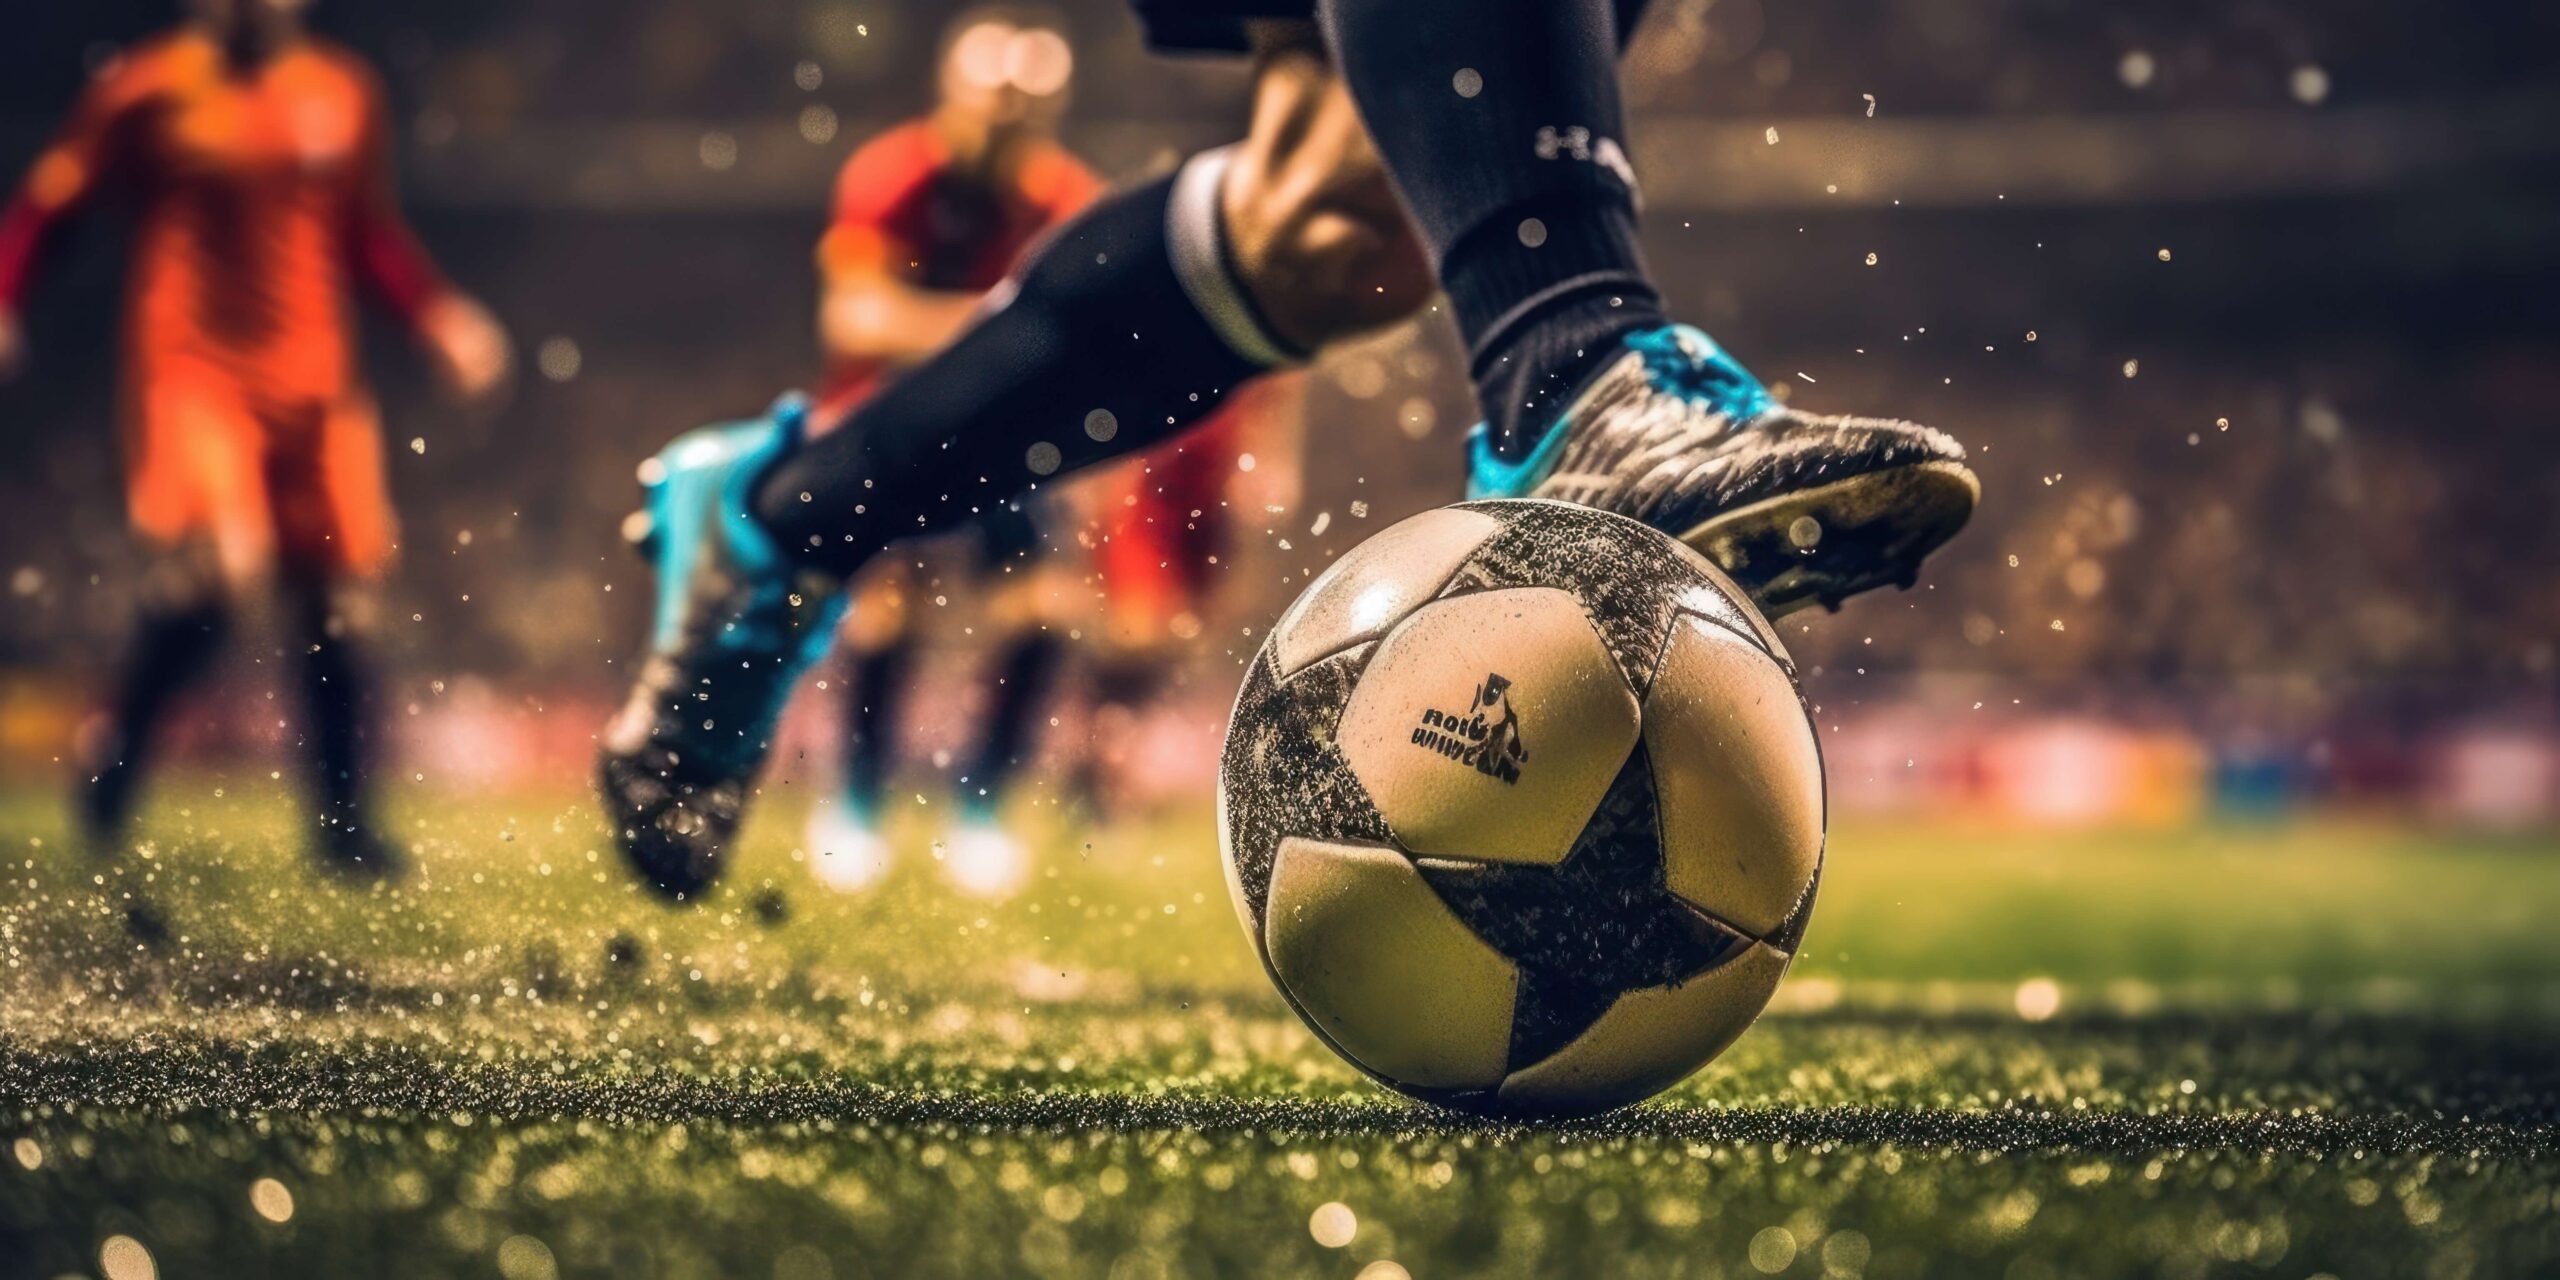 サッカーをする男性の足。